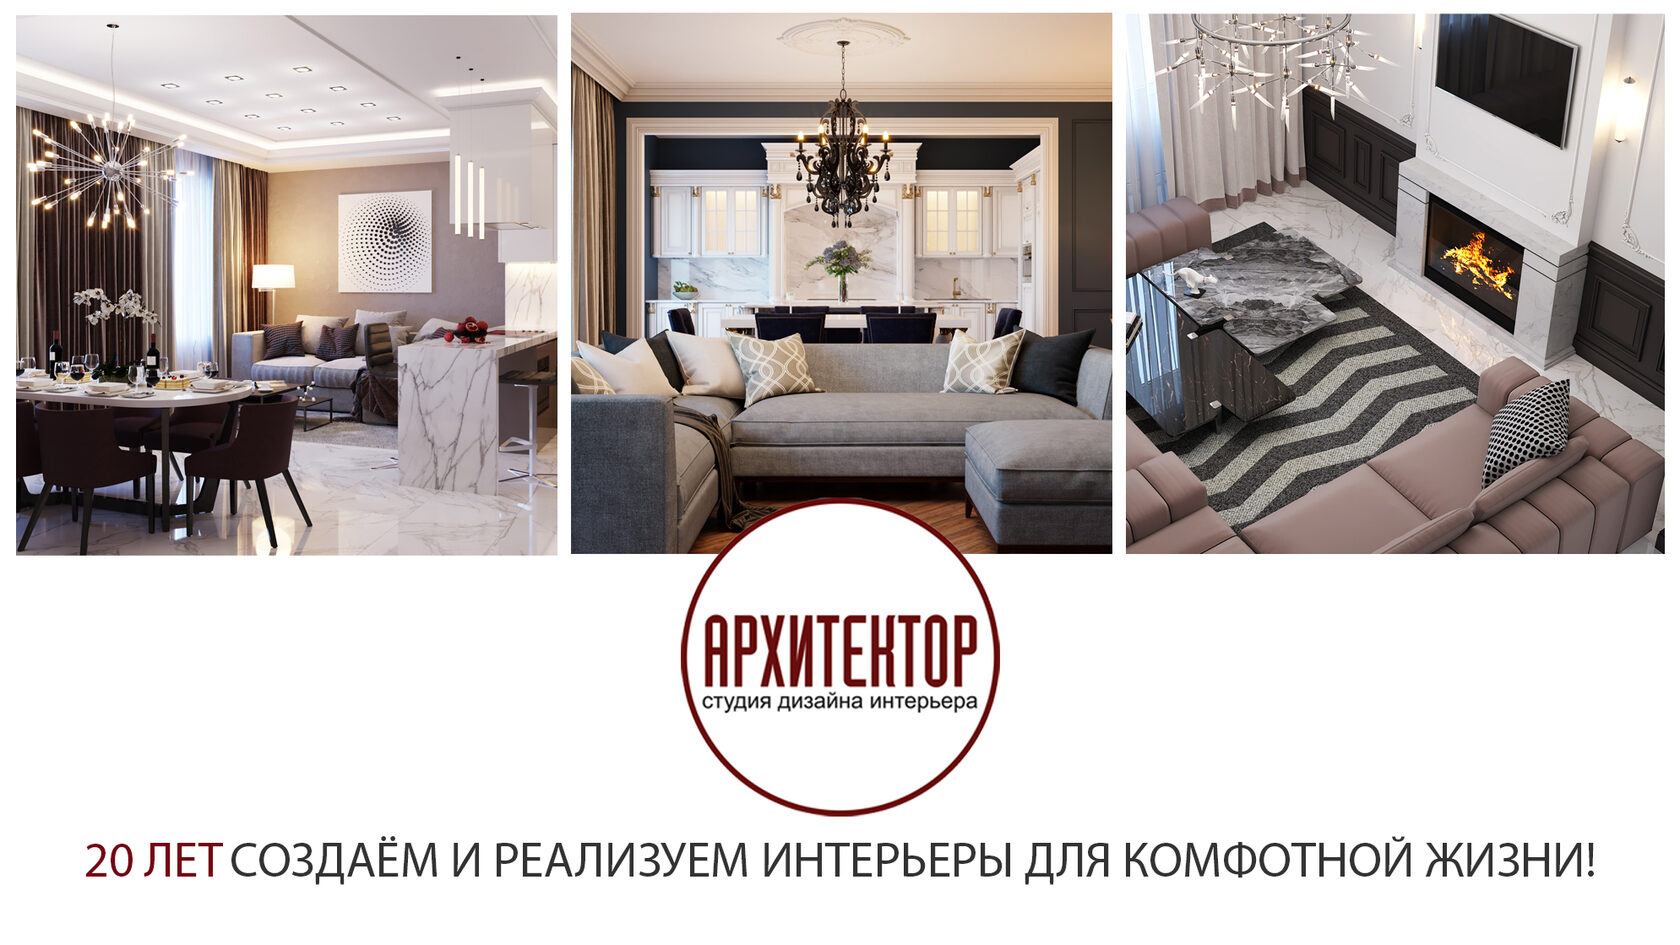 Дизайнеры интерьера, Санкт-Петербург: 1409 профессионалов